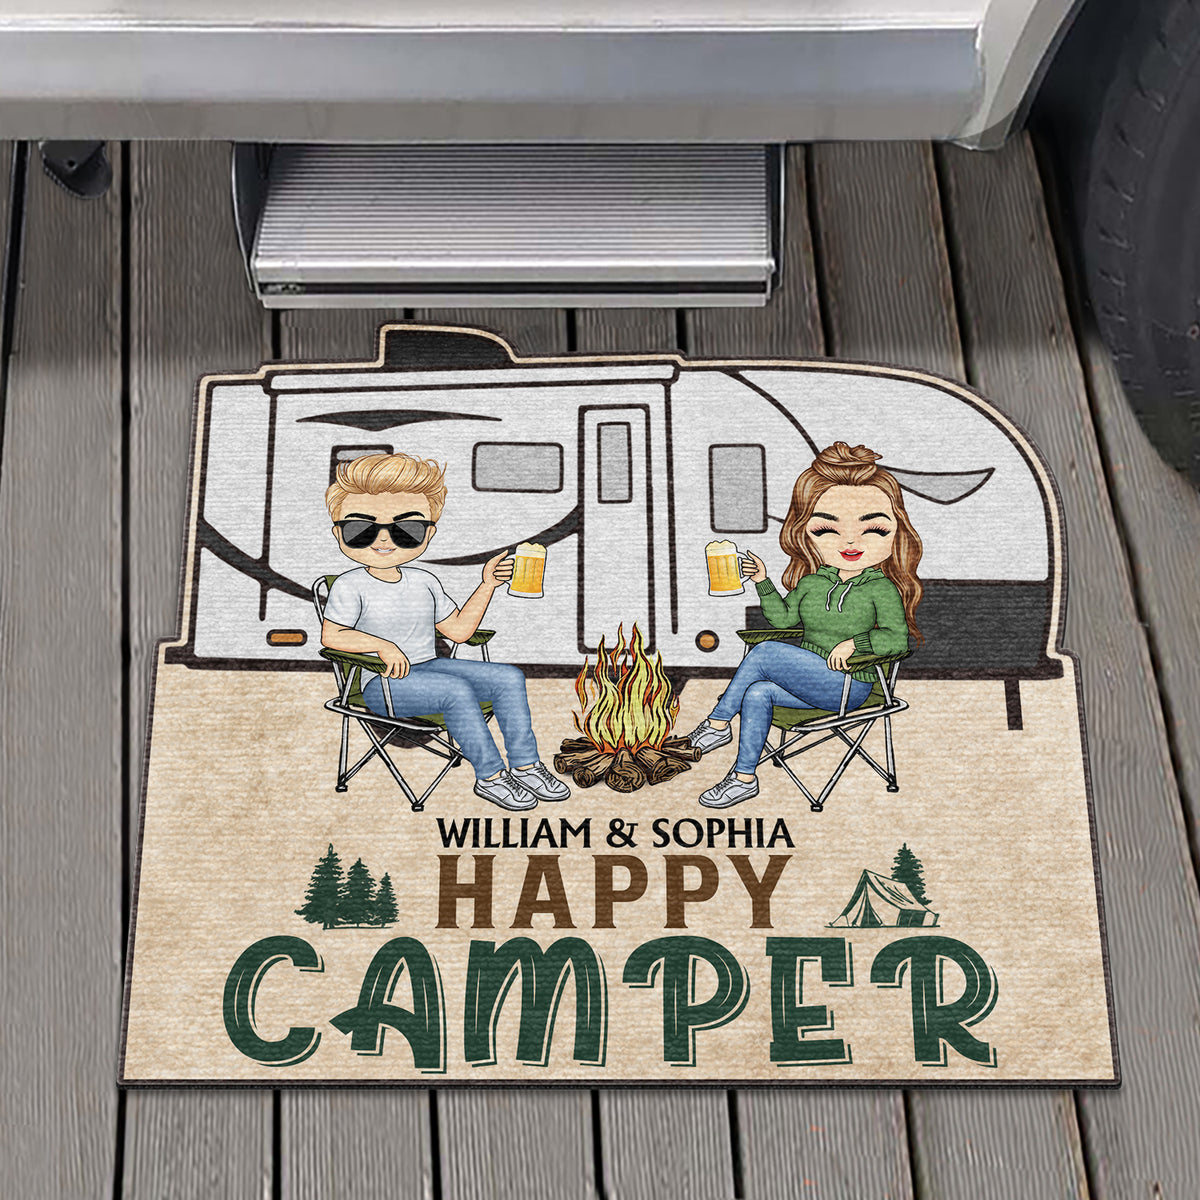 Happy Camper Doormat